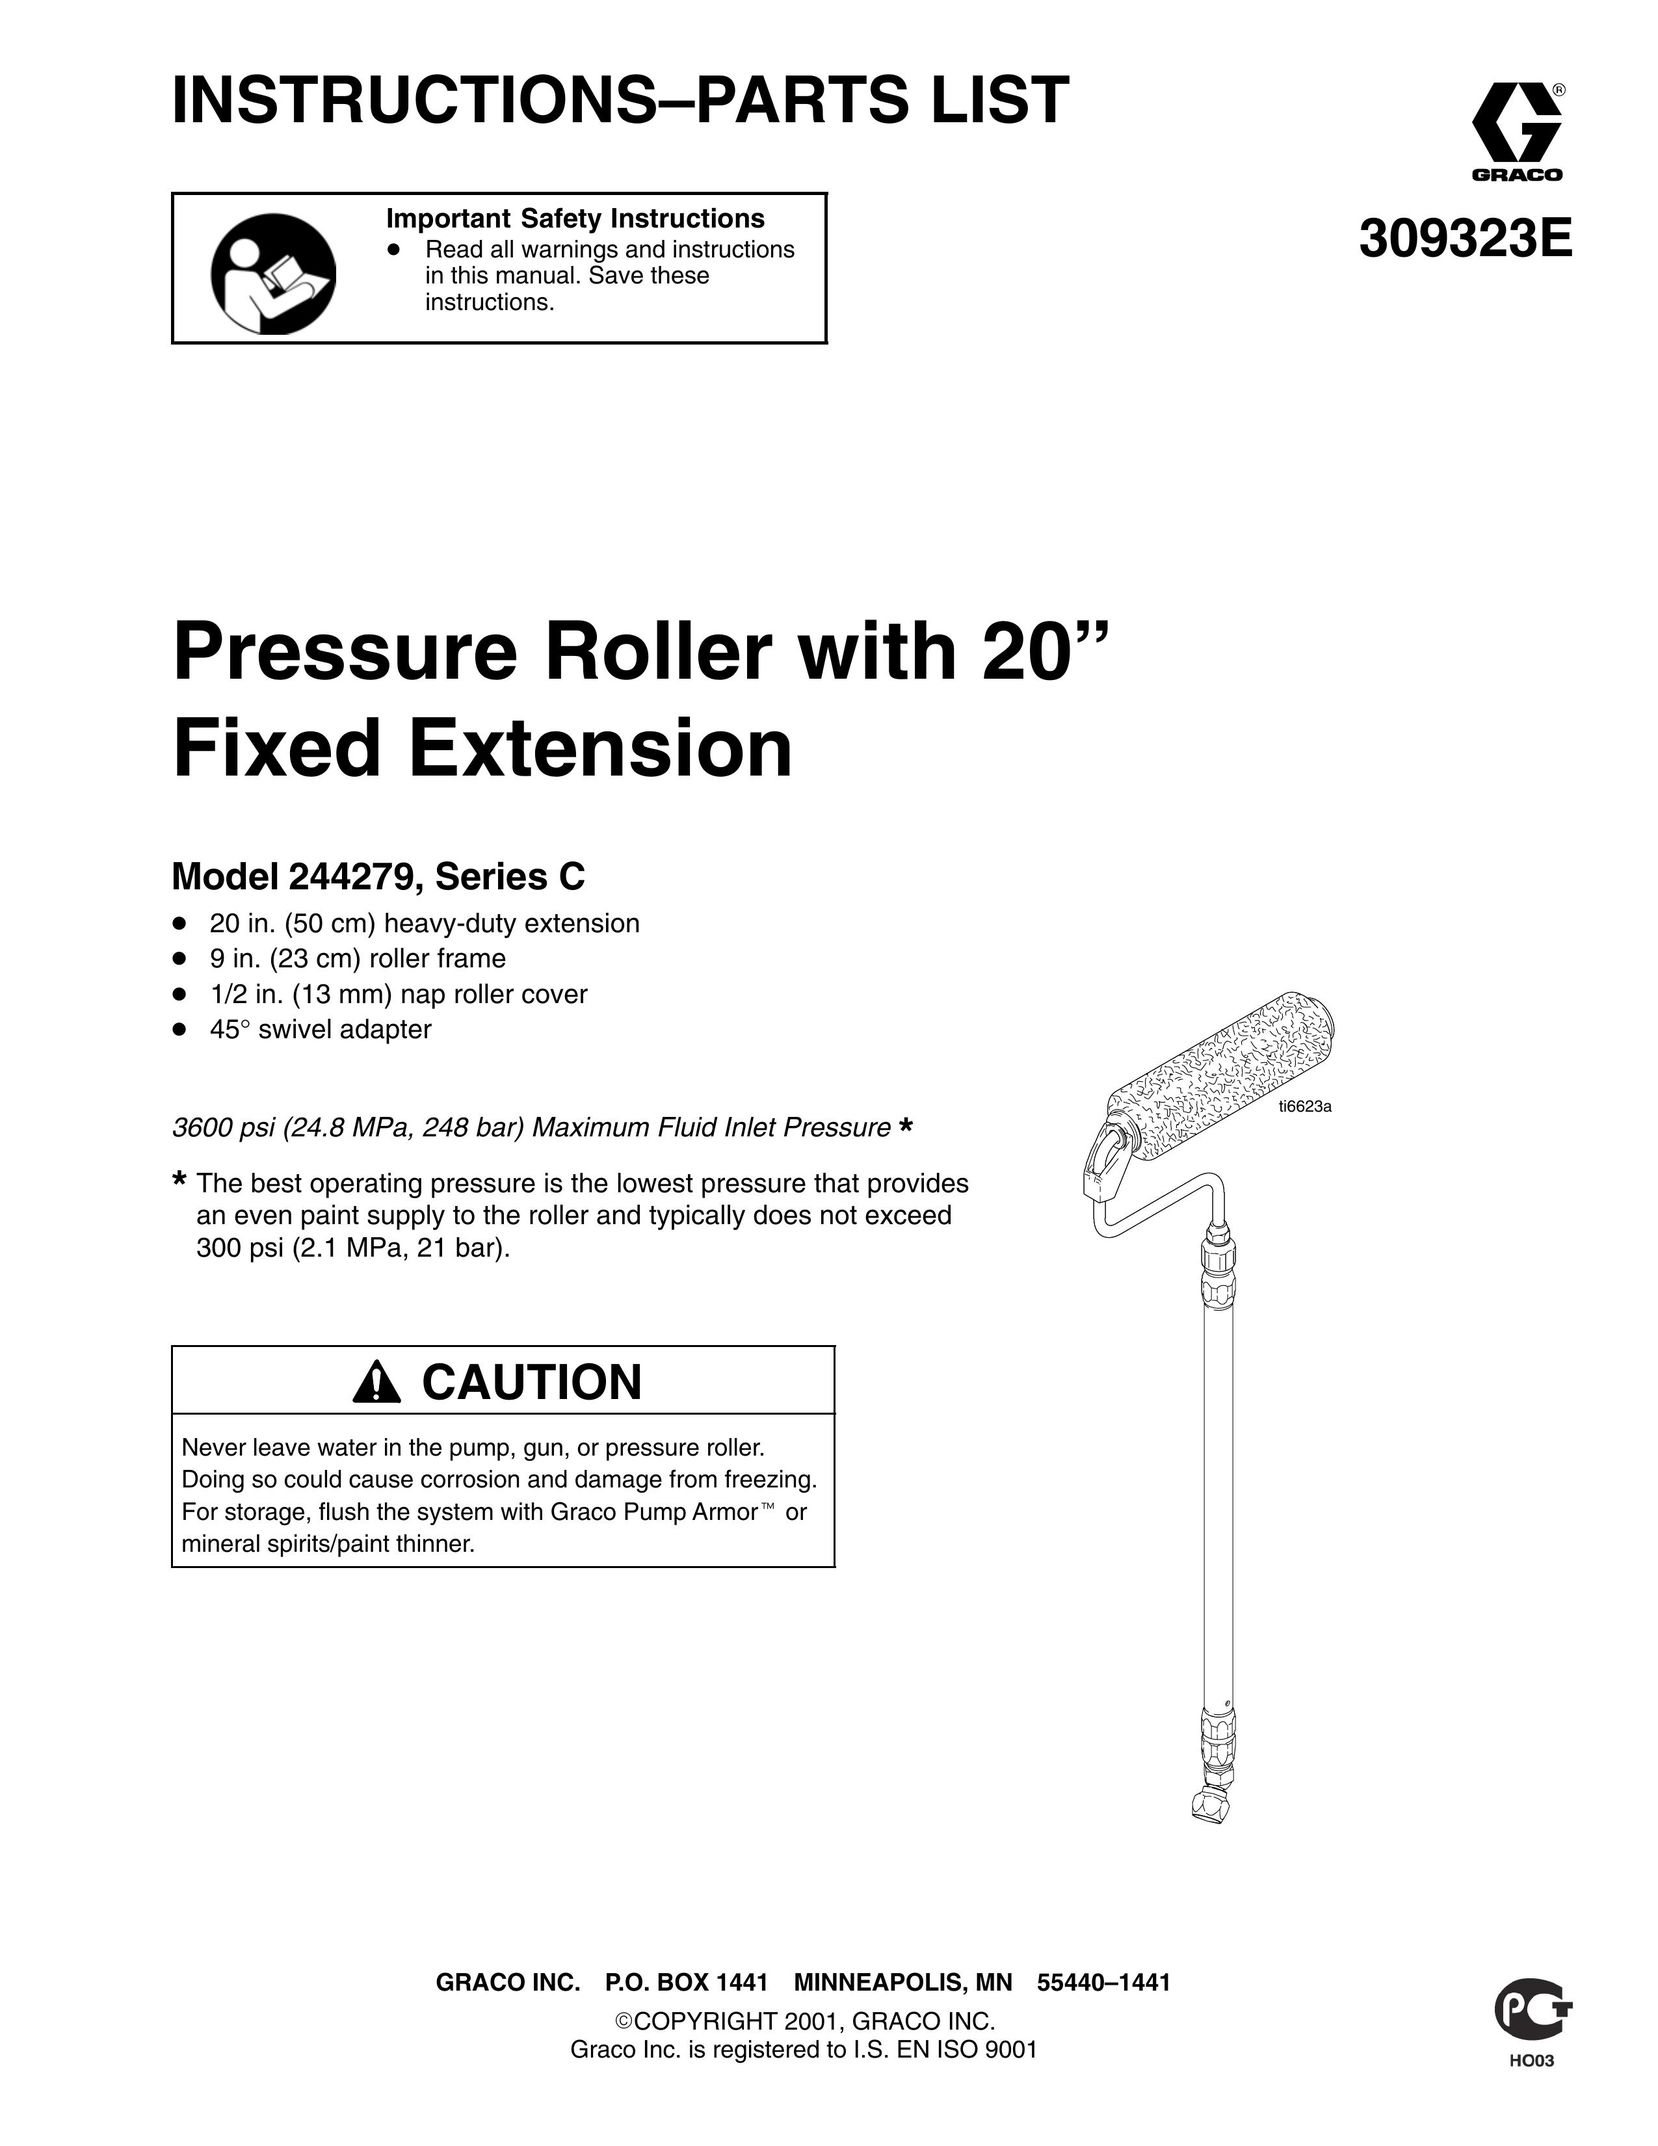 Graco Inc. 309323E Power Roller User Manual